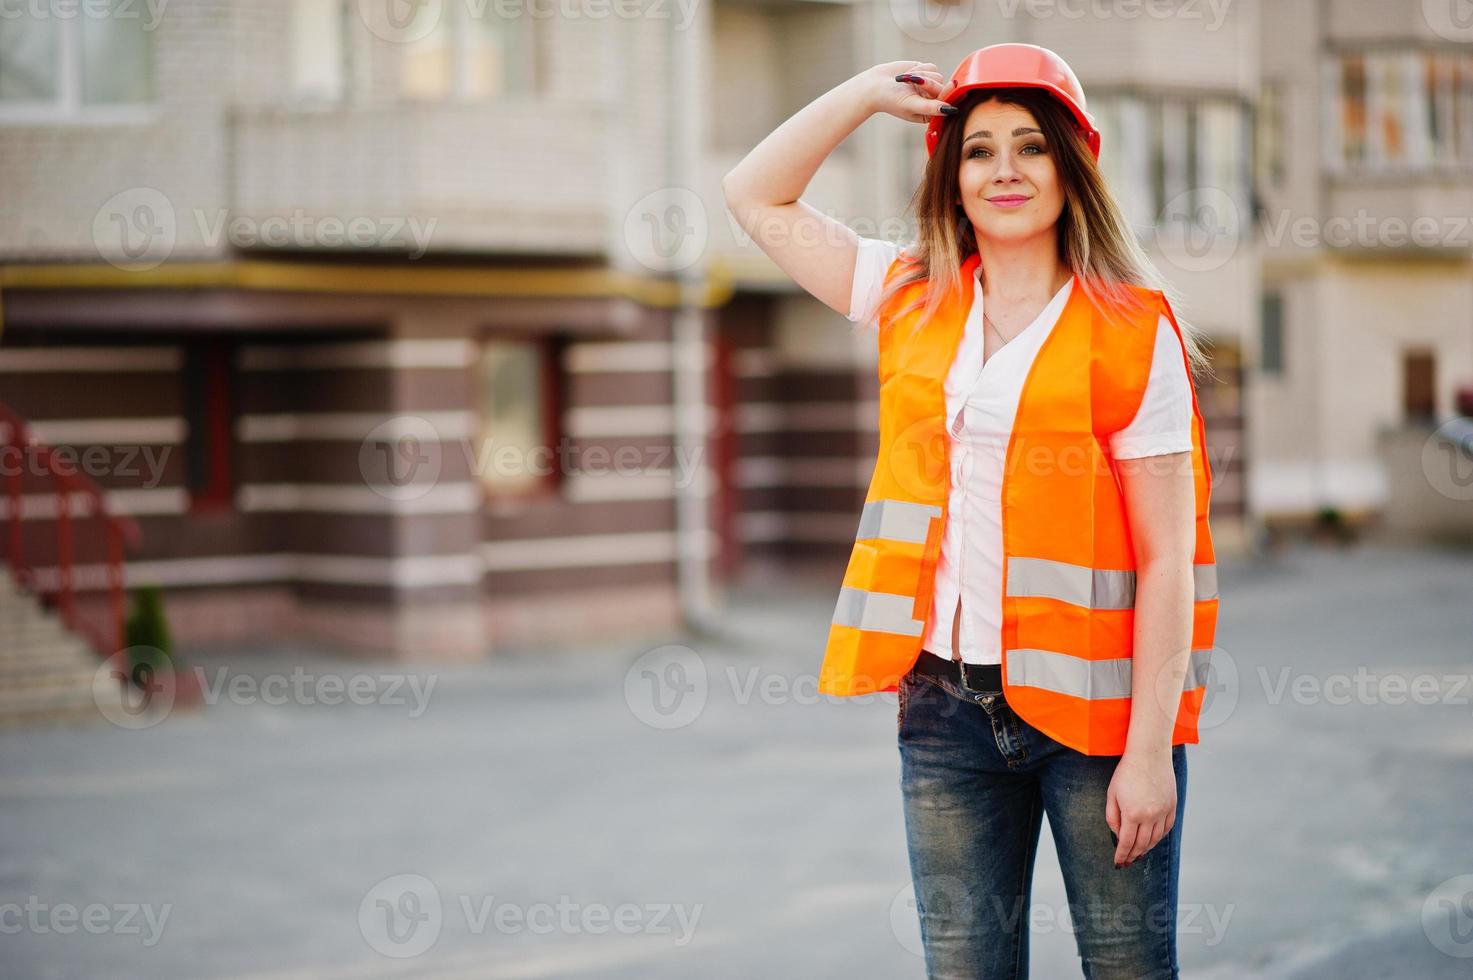 ingenjör byggare kvinna i uniform väst och orange skyddshjälm mot nybyggnation. fastighet boende block tema. foto